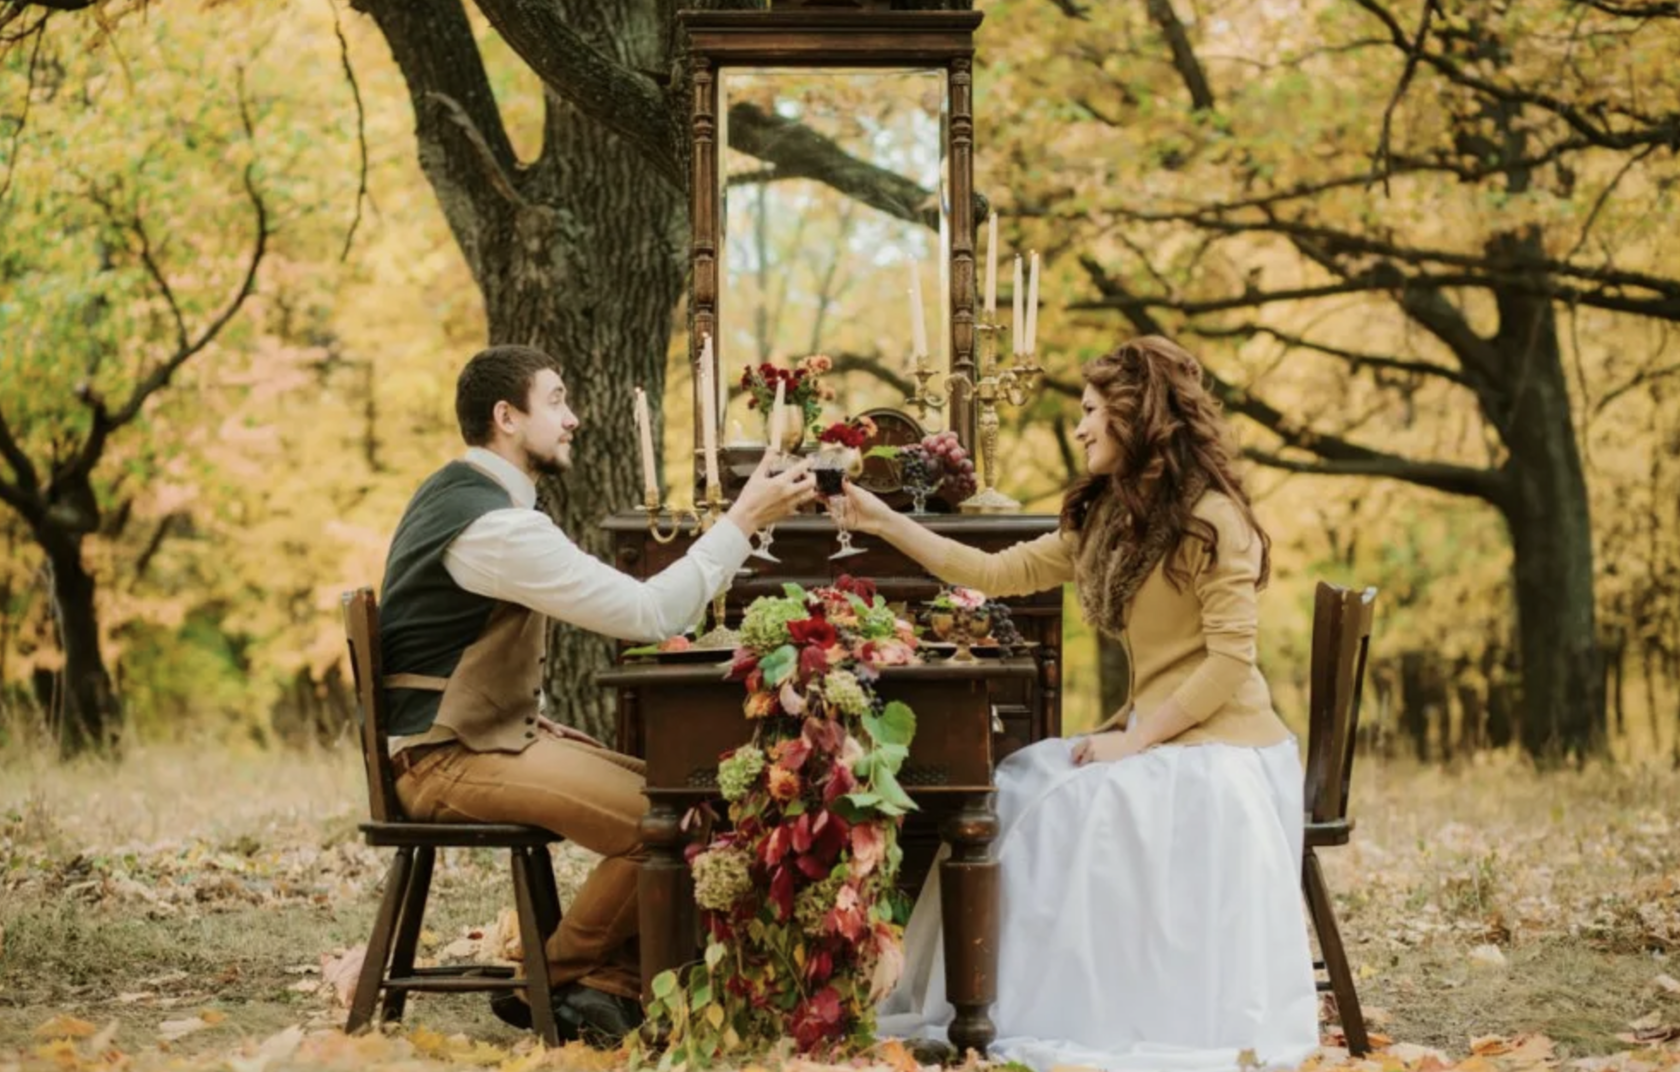 Пара столиков. Свадьба в лесу. Осенняя свадьба. Свадьба в осеннем стиле. Свадебная фотосессия осенью.